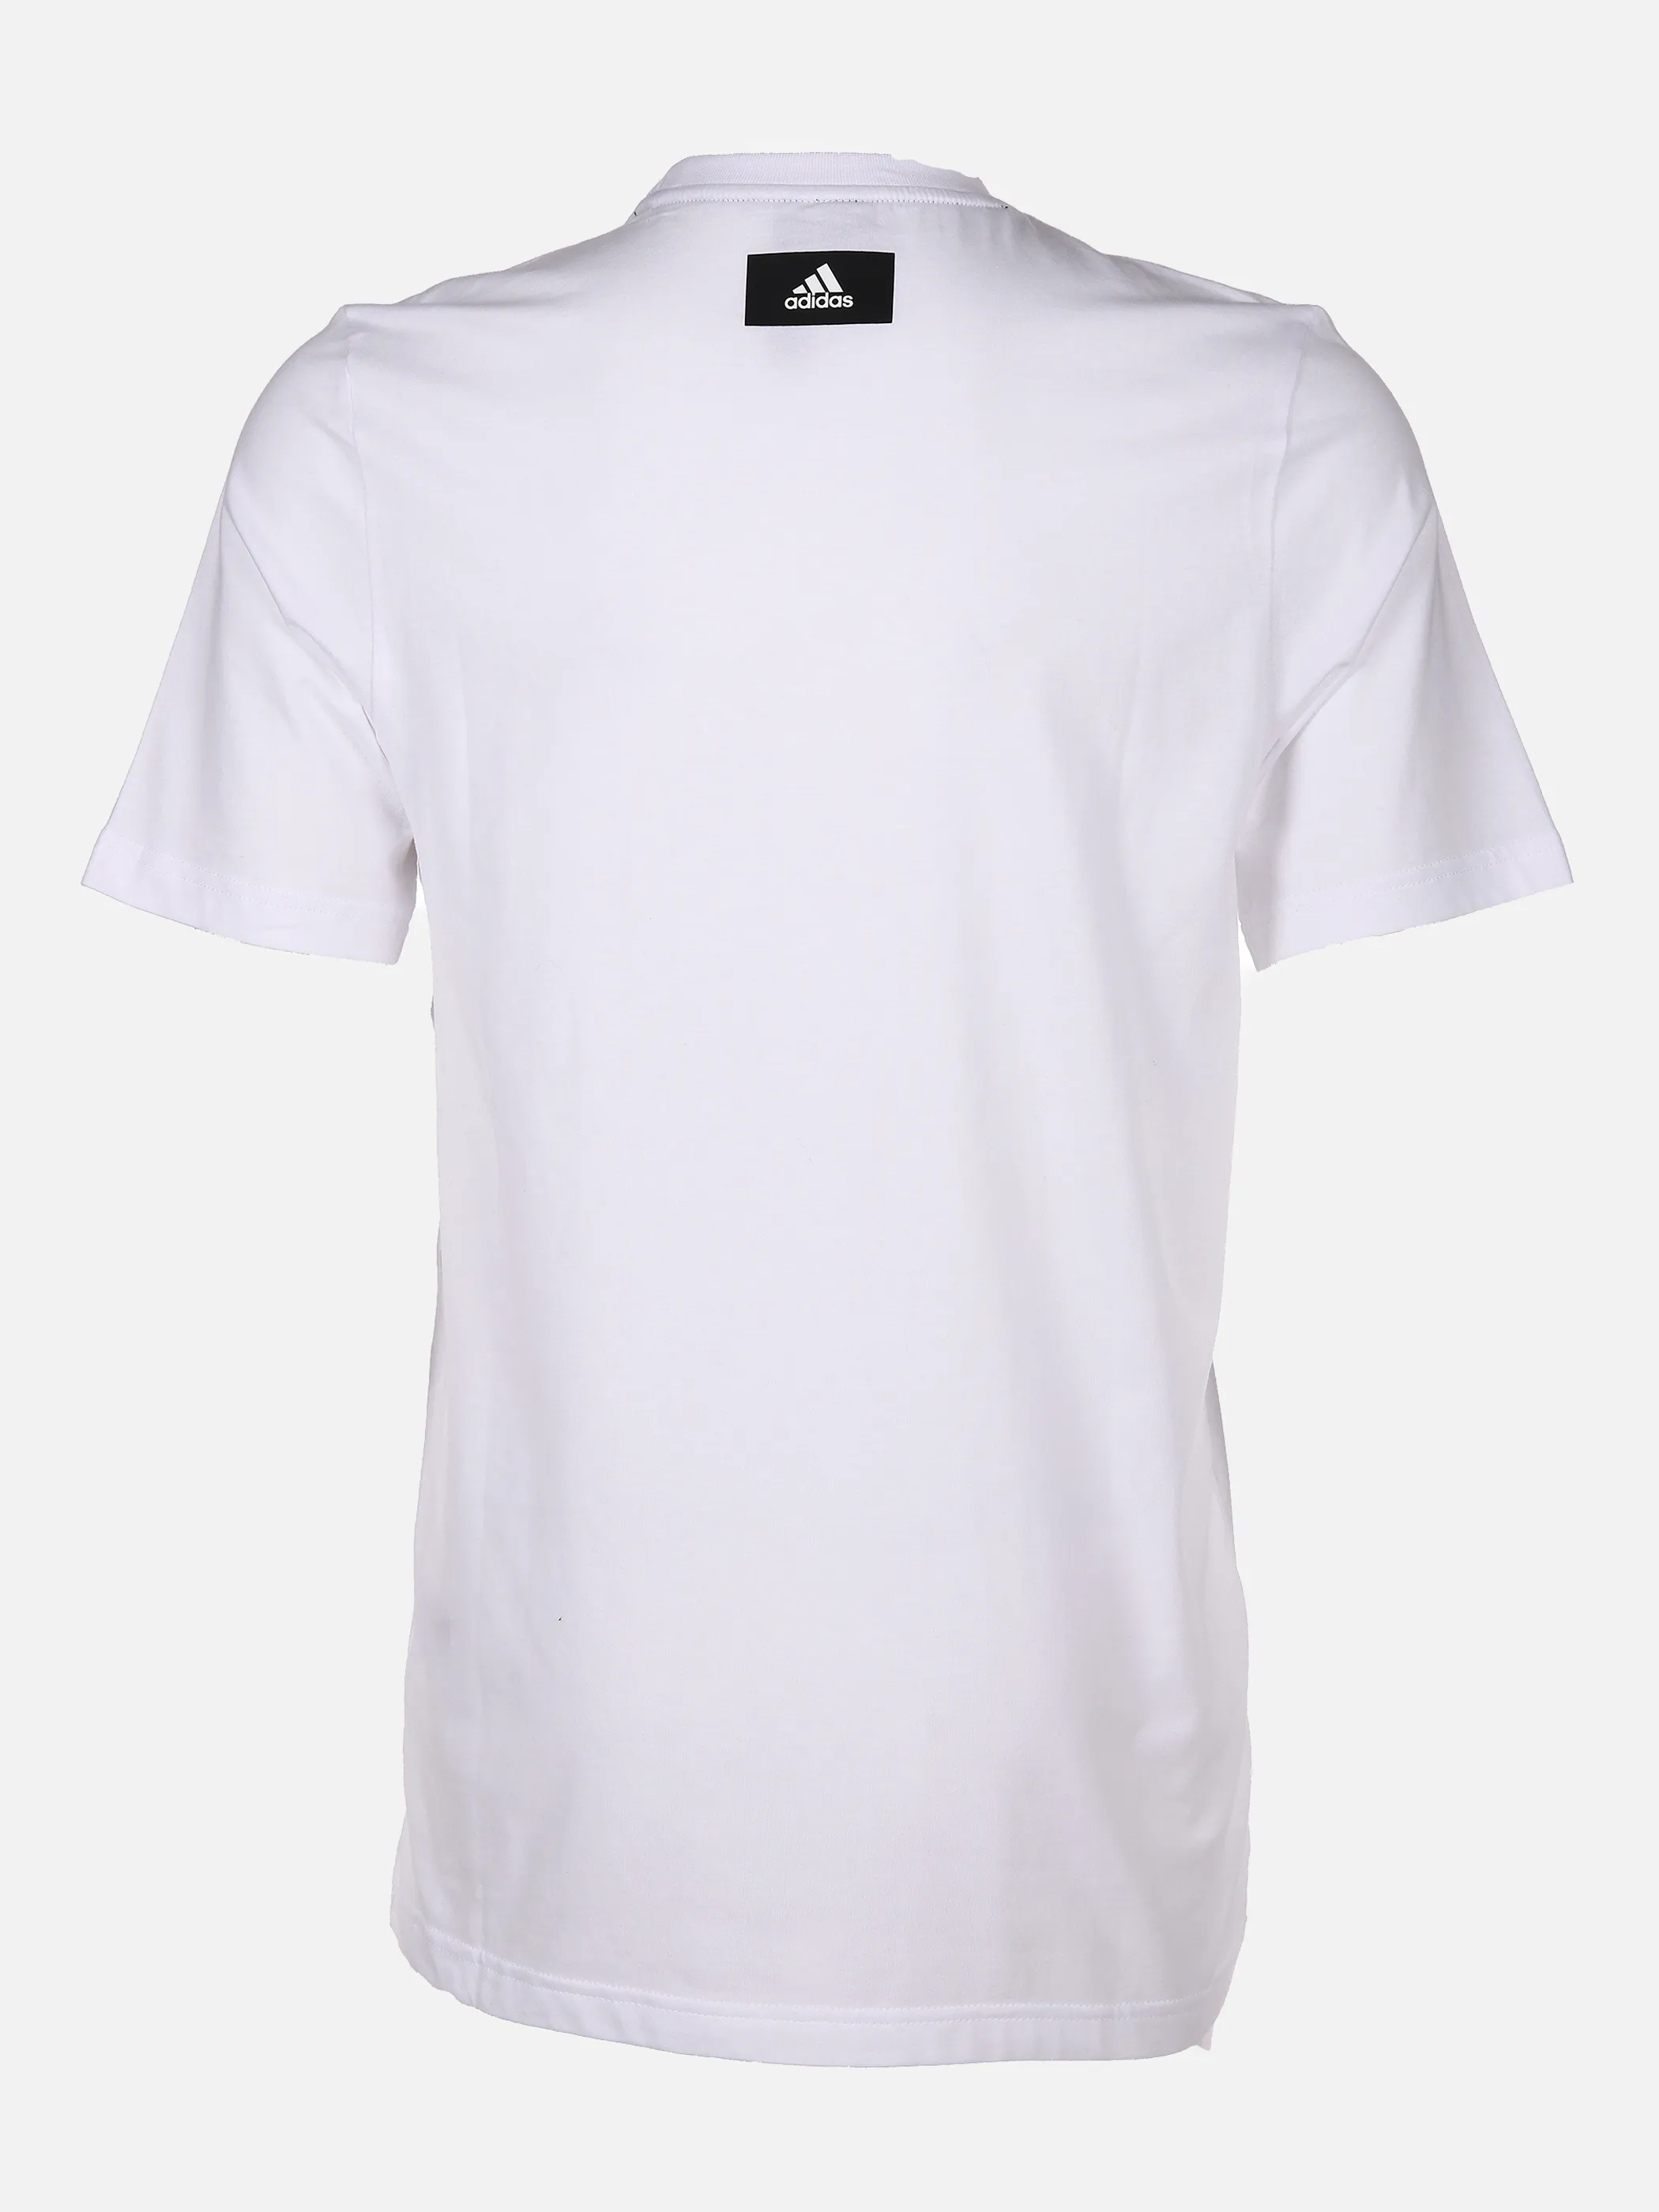 Herren Sport Shirt mit Logoprint | 001A | noSize | 845773-001a | Ärmellose Unterhemden